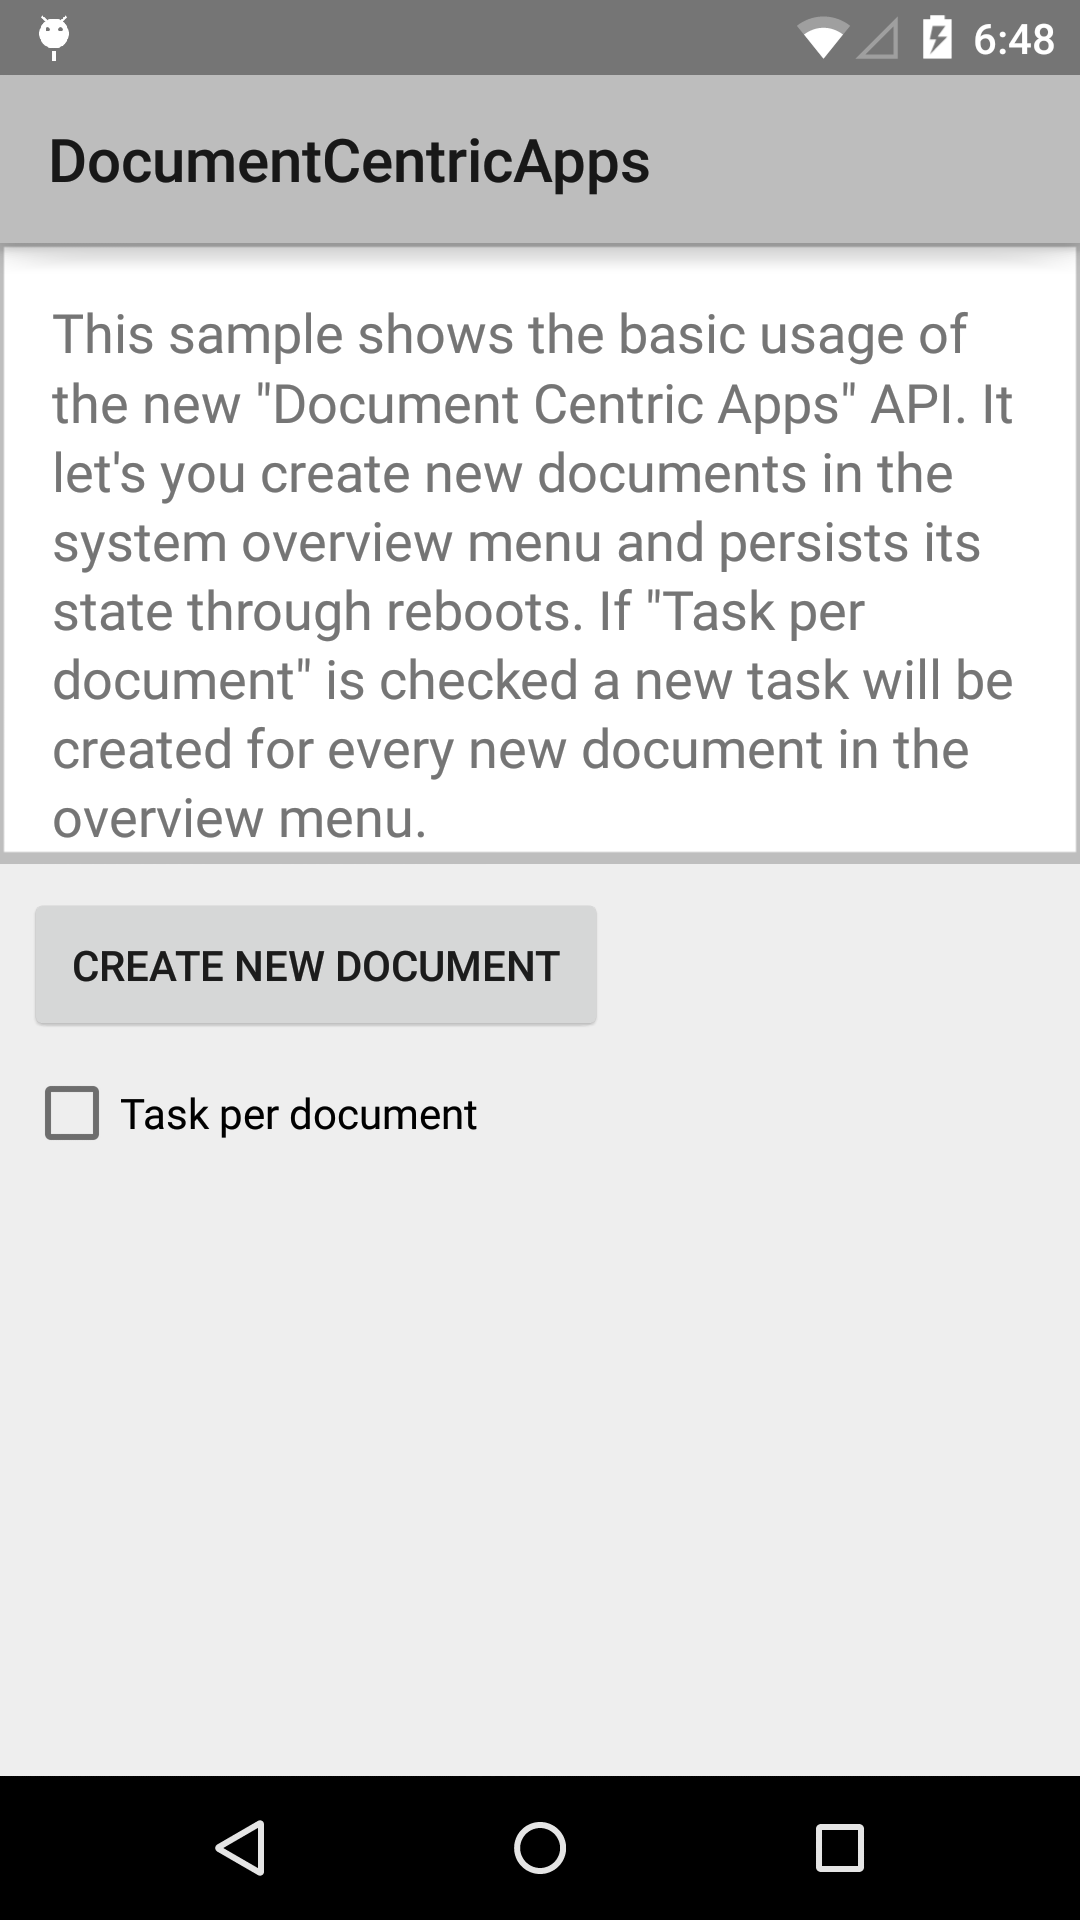 DocumentCentricApps application screenshot